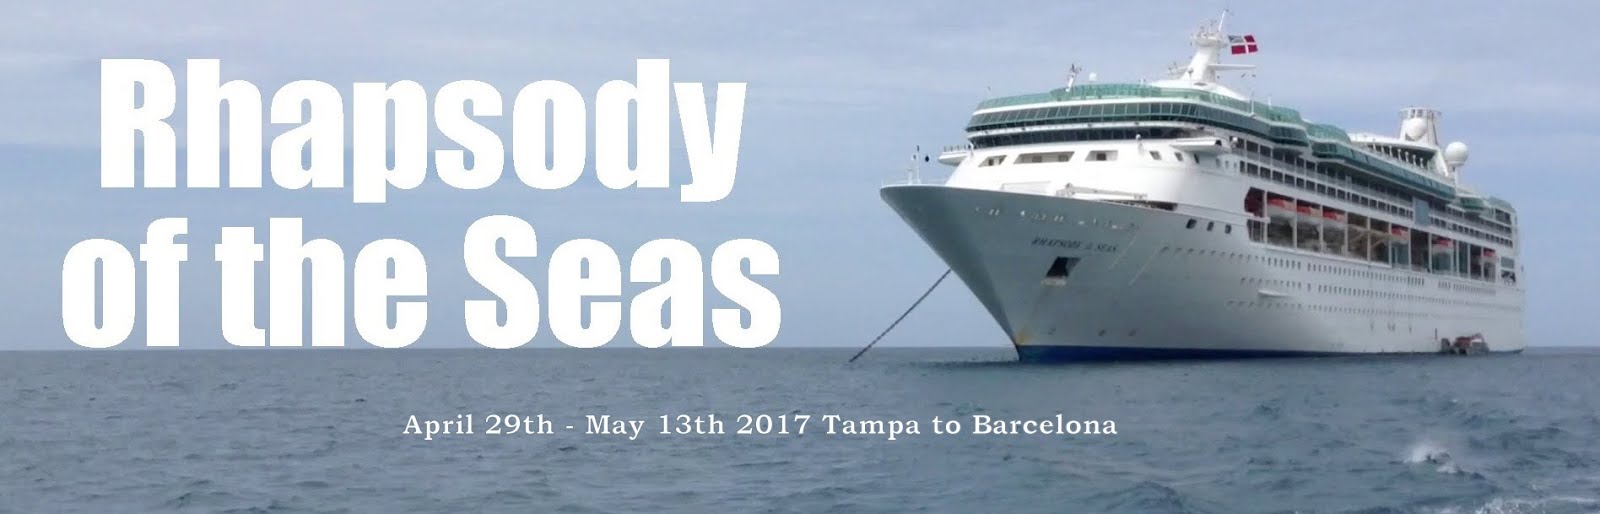 April 29 2017 - Transatlantic Tampa to Barcleona